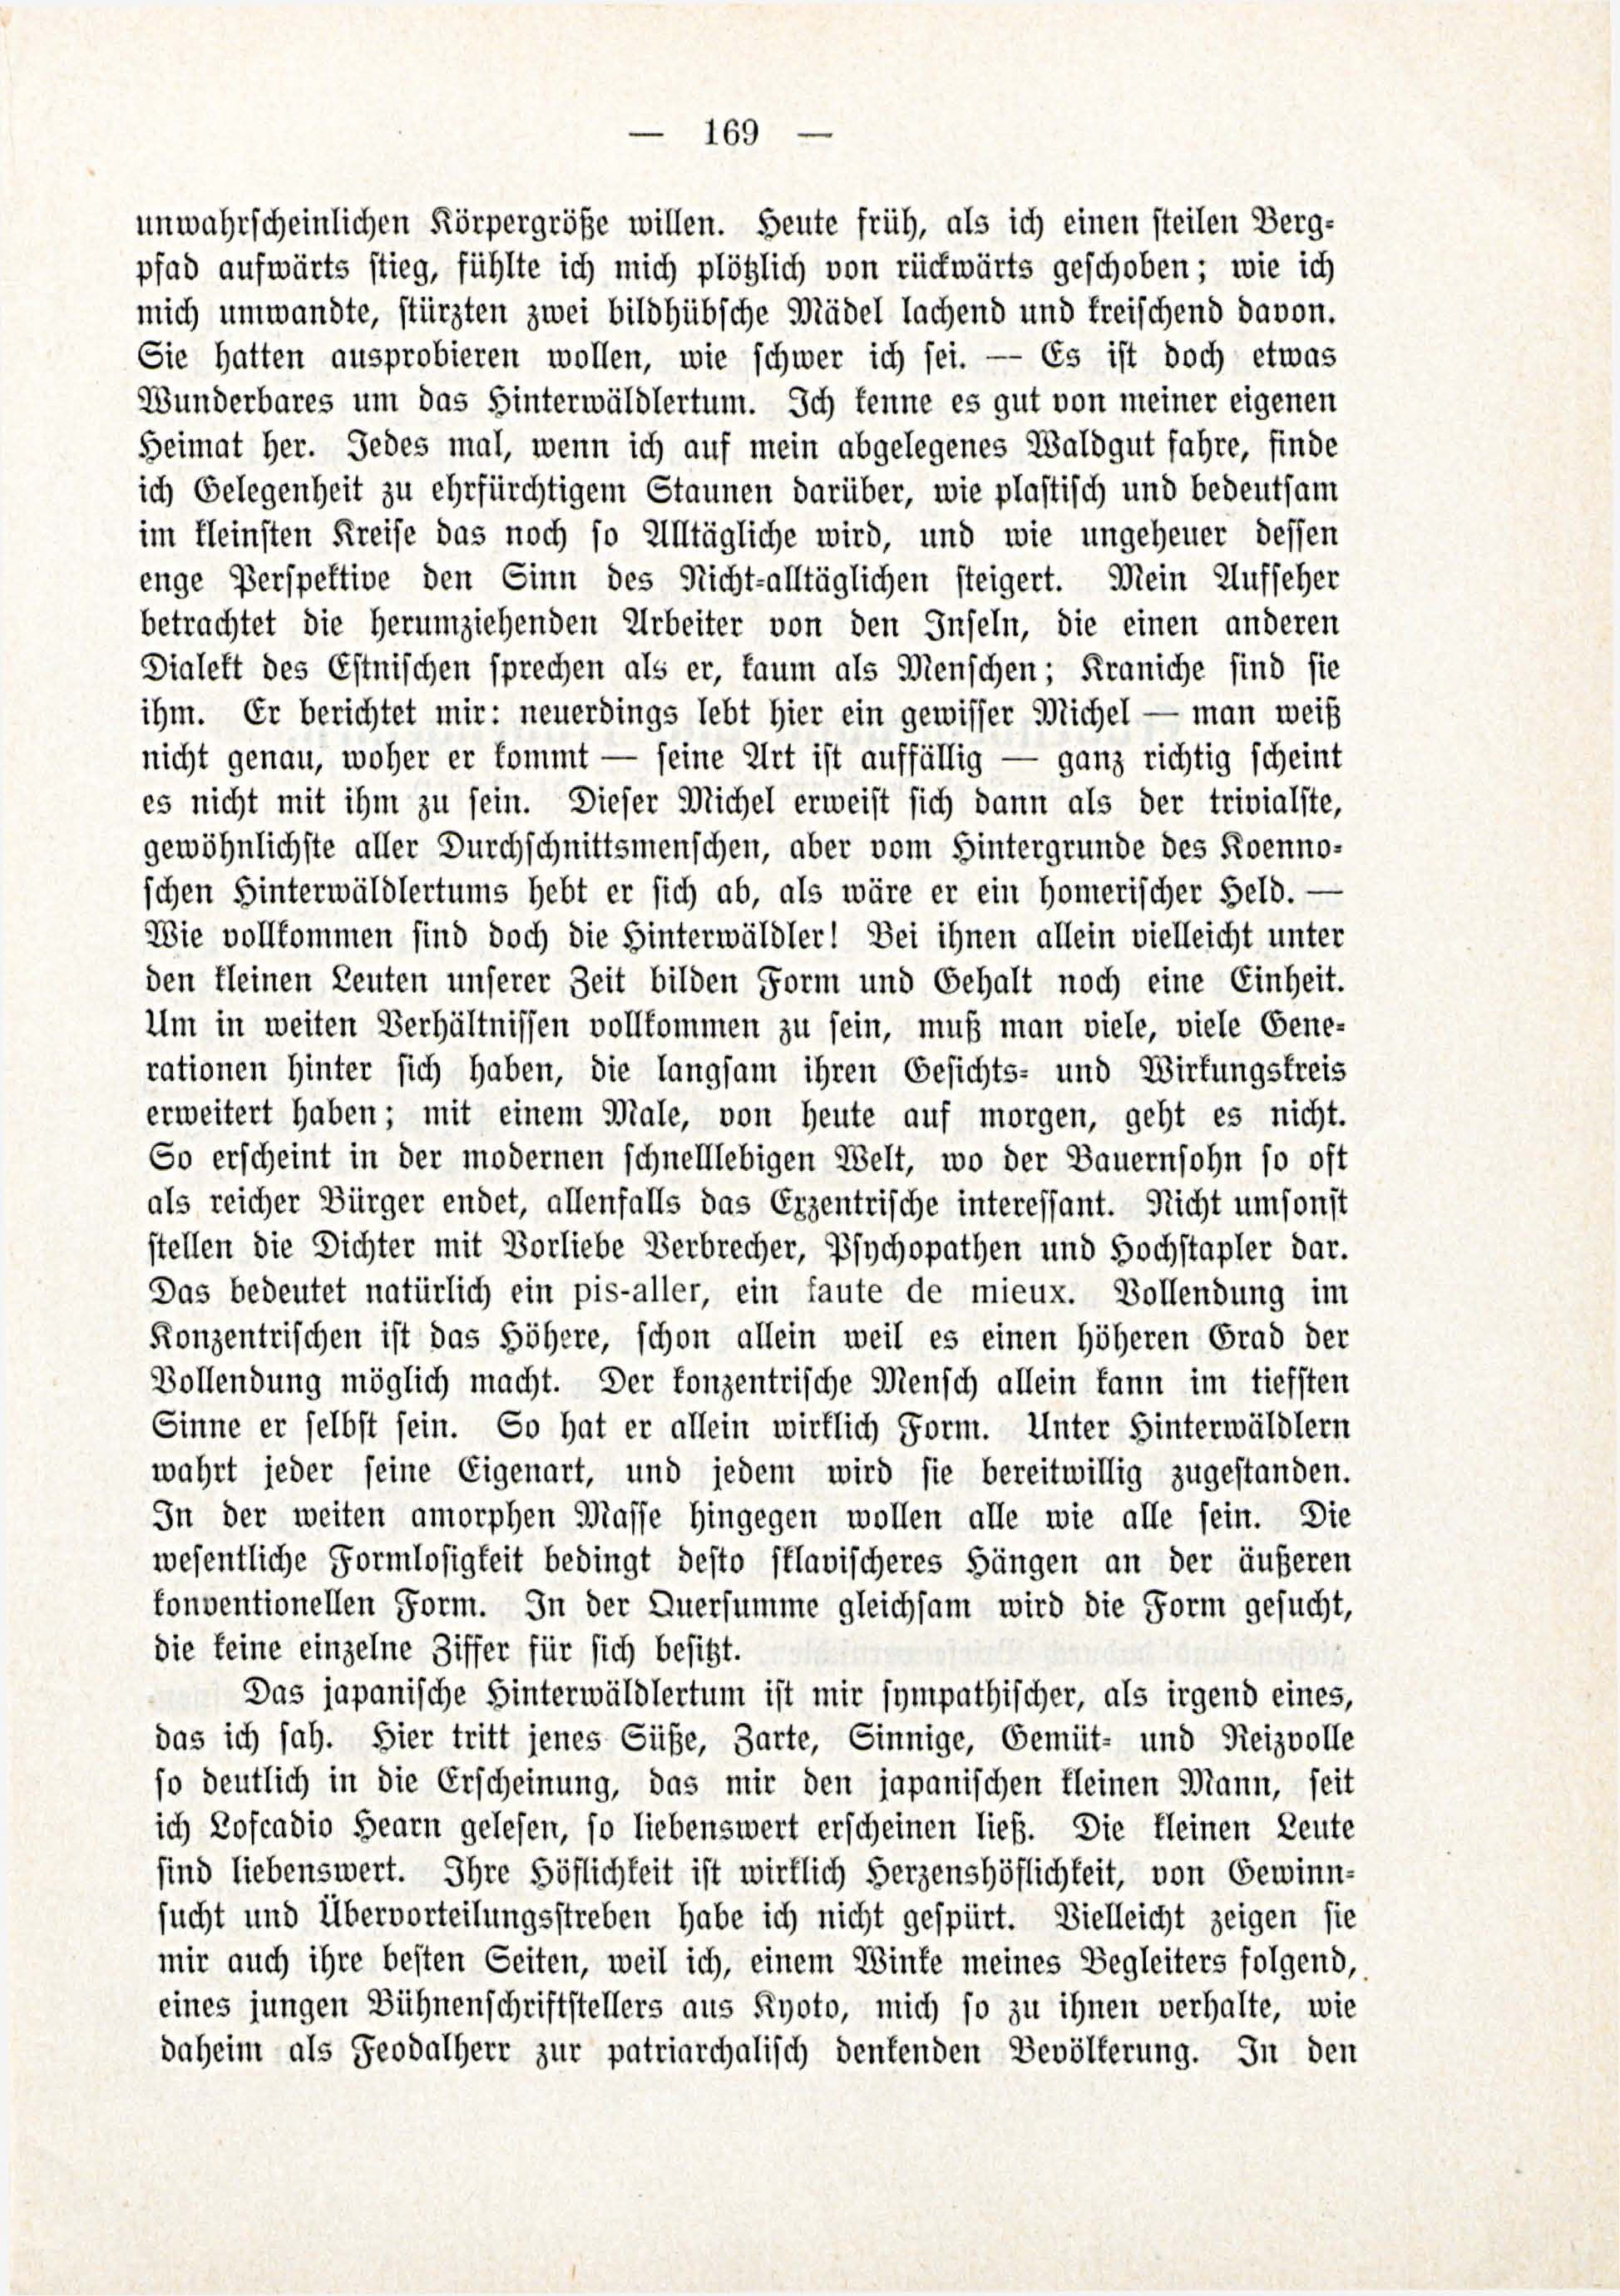 Deutsche Monatsschrift für Russland [3/03] (1914) | 15. (169) Основной текст